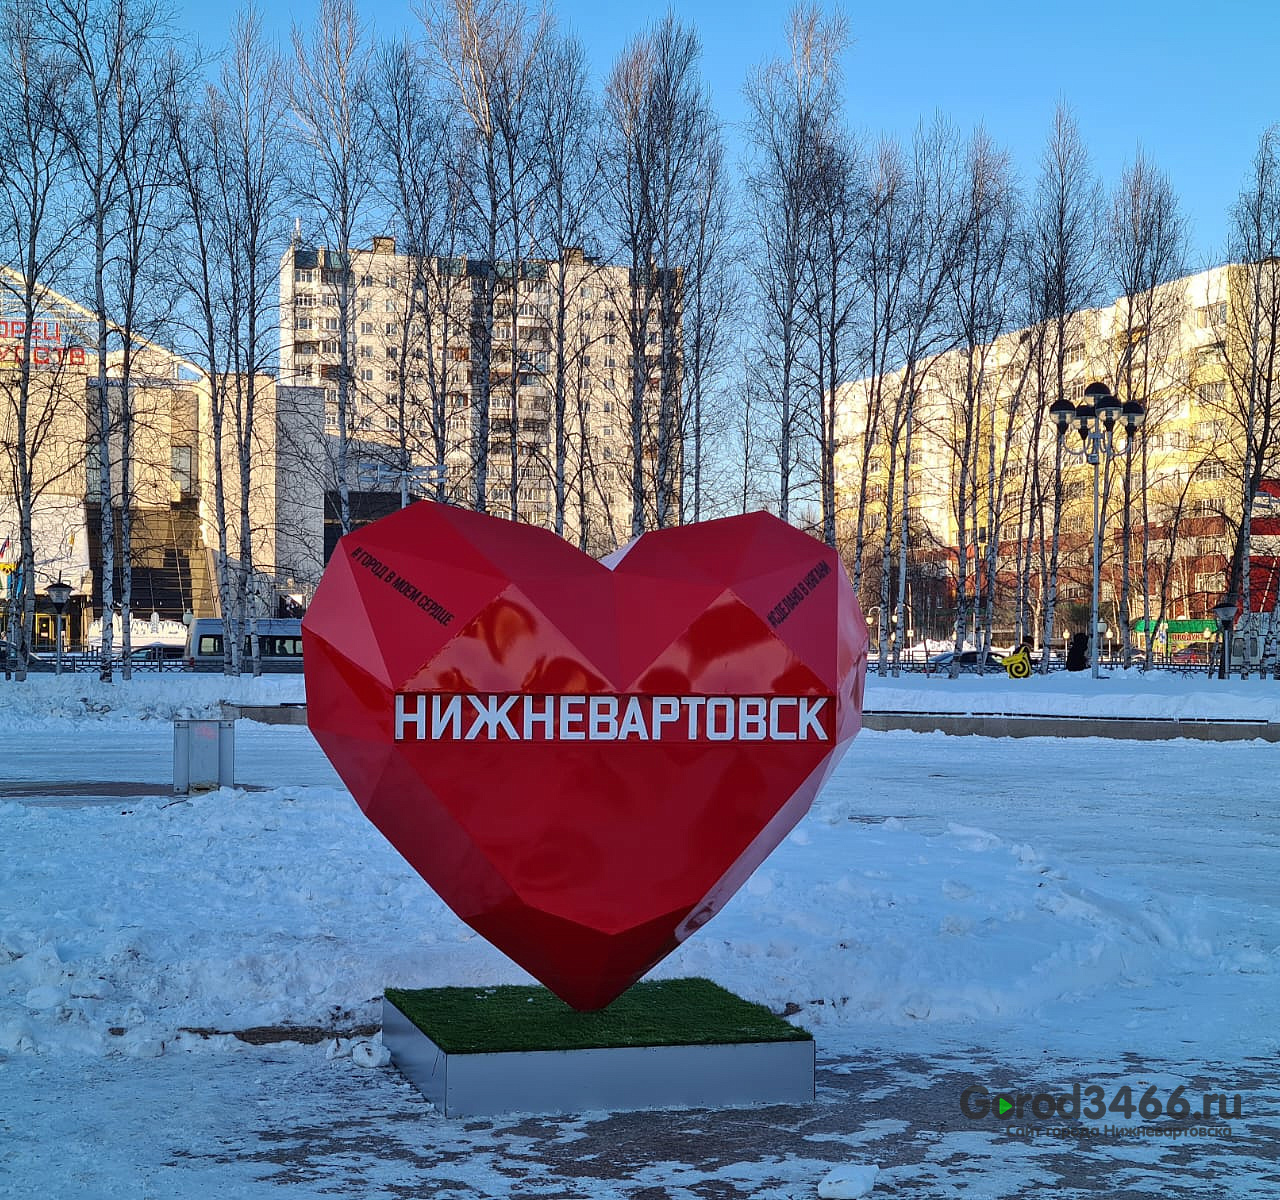 Жители Нягани подарили «теплое сердце» на день рождения Нижневартовска